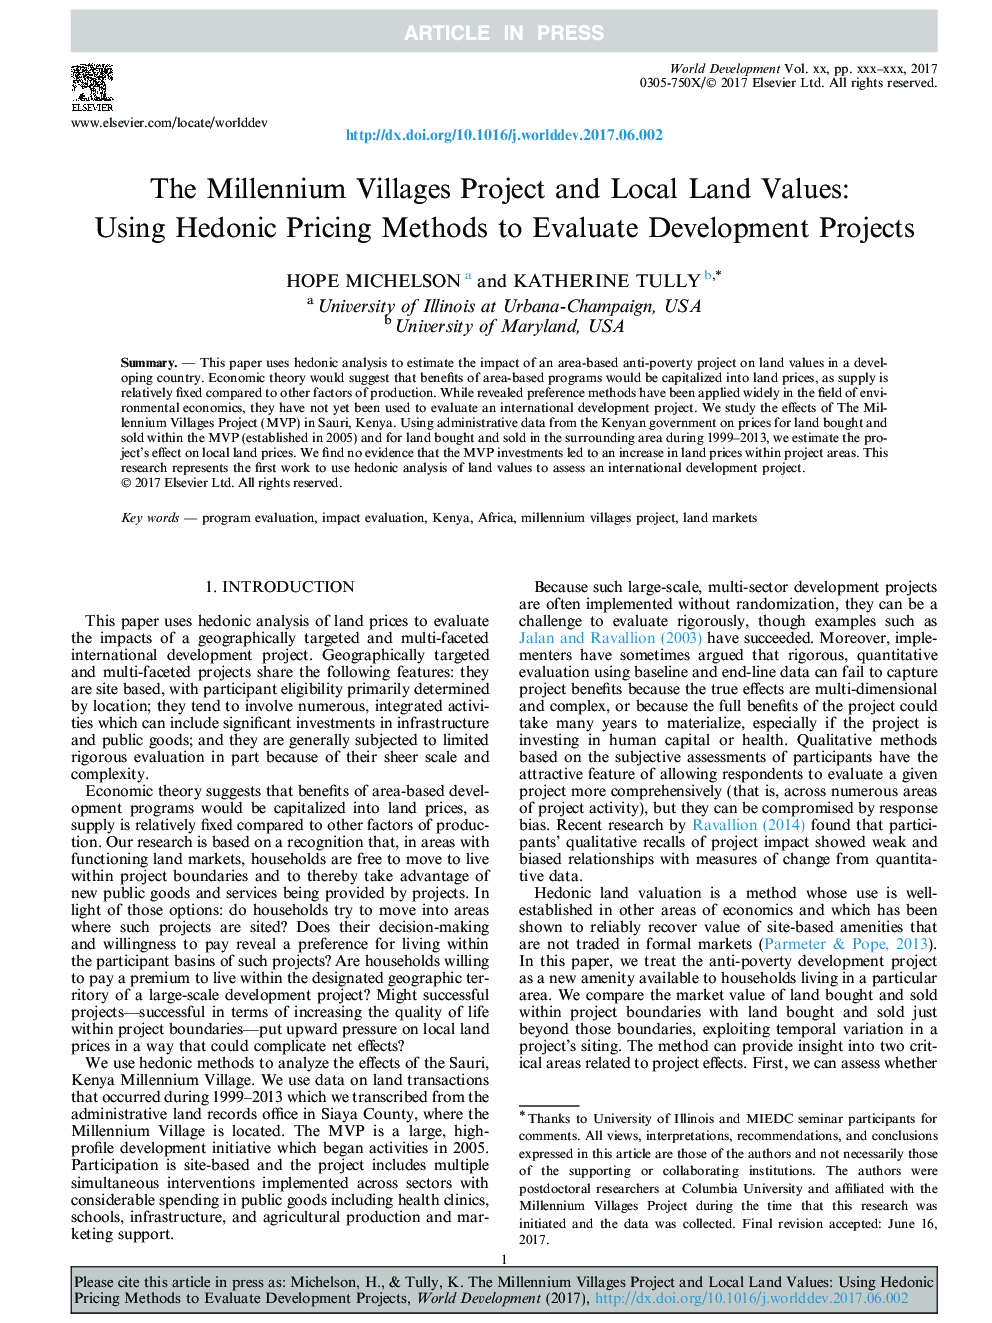 پروژه های روستاهای هزاره و ارزش های محلی محلی: با استفاده از روش های قیمت گذاری هزاره برای ارزیابی پروژه های توسعه 